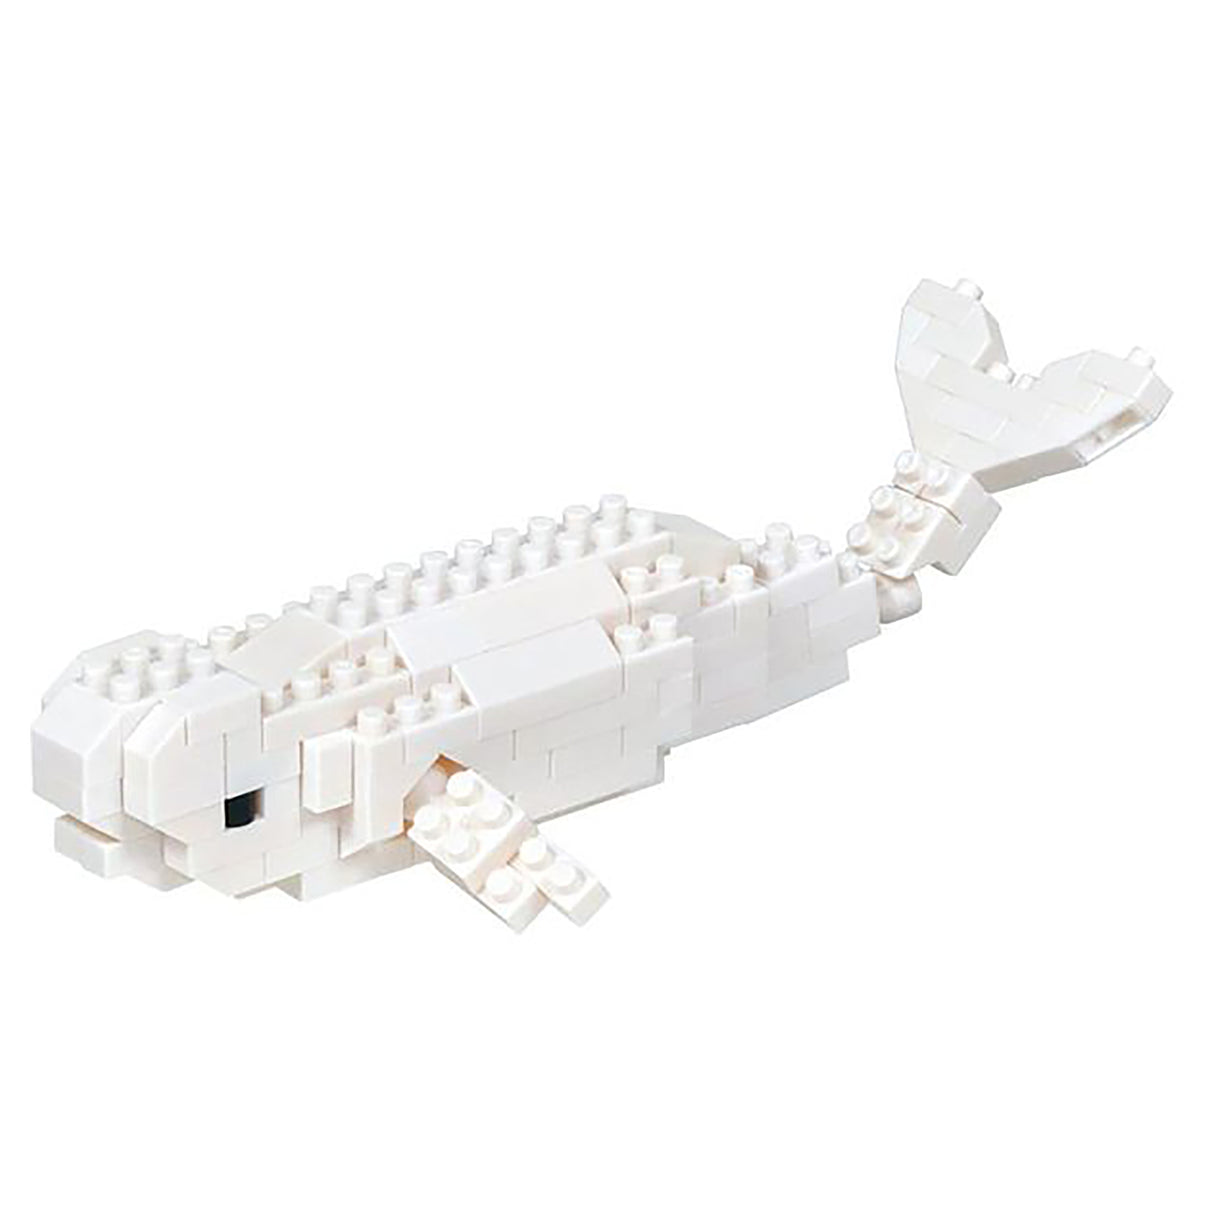 nanoblock Beluga (140 pieces)